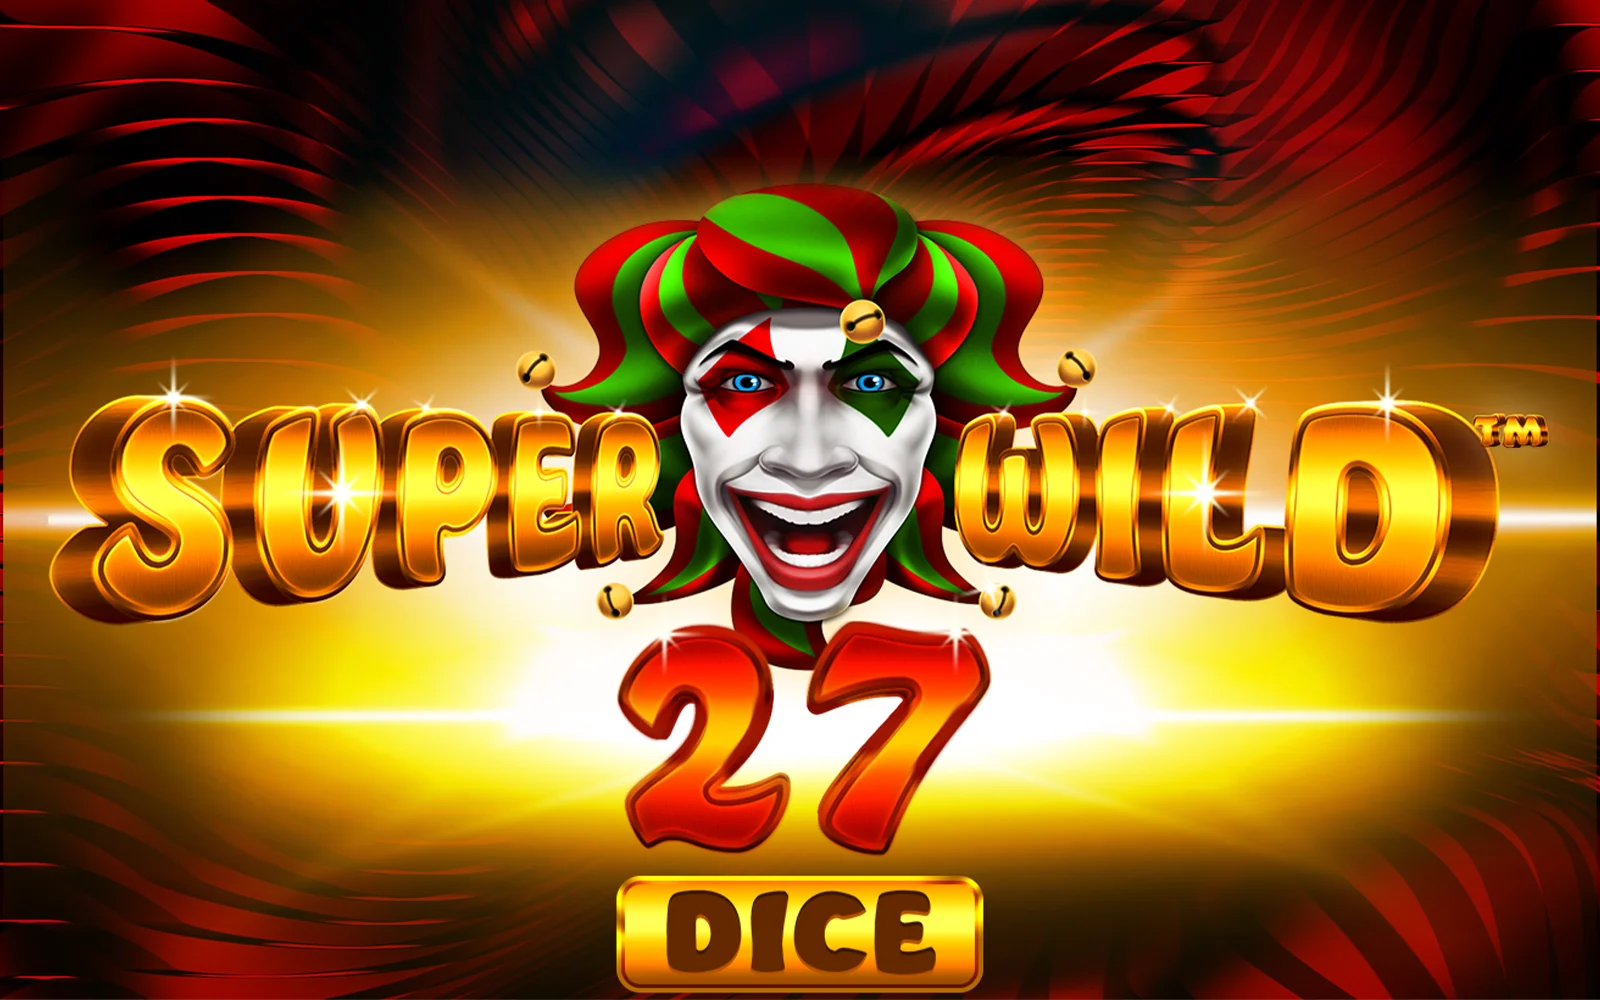 Gioca a Super Wild 27 Dice sul casino online Starcasino.be